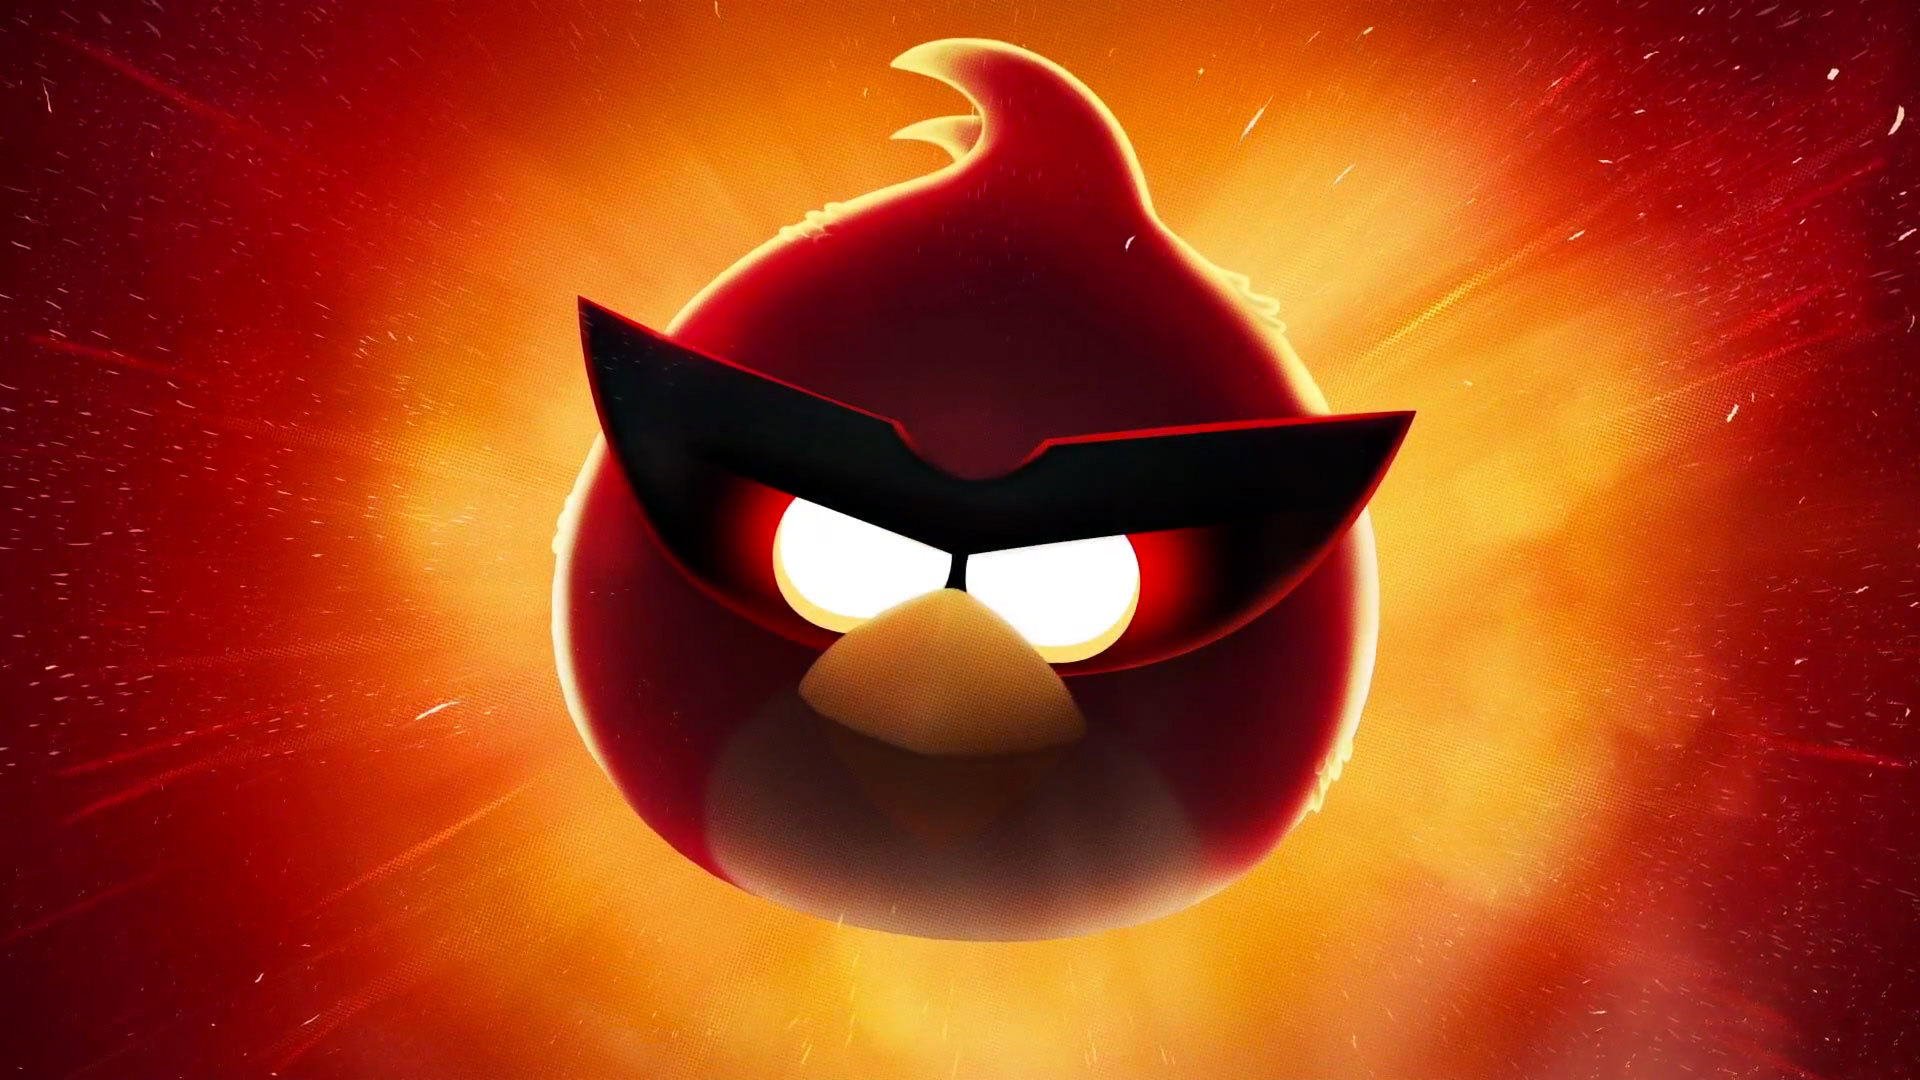 Los mejores fondos de pantalla de Angry Birds para la pantalla del teléfono